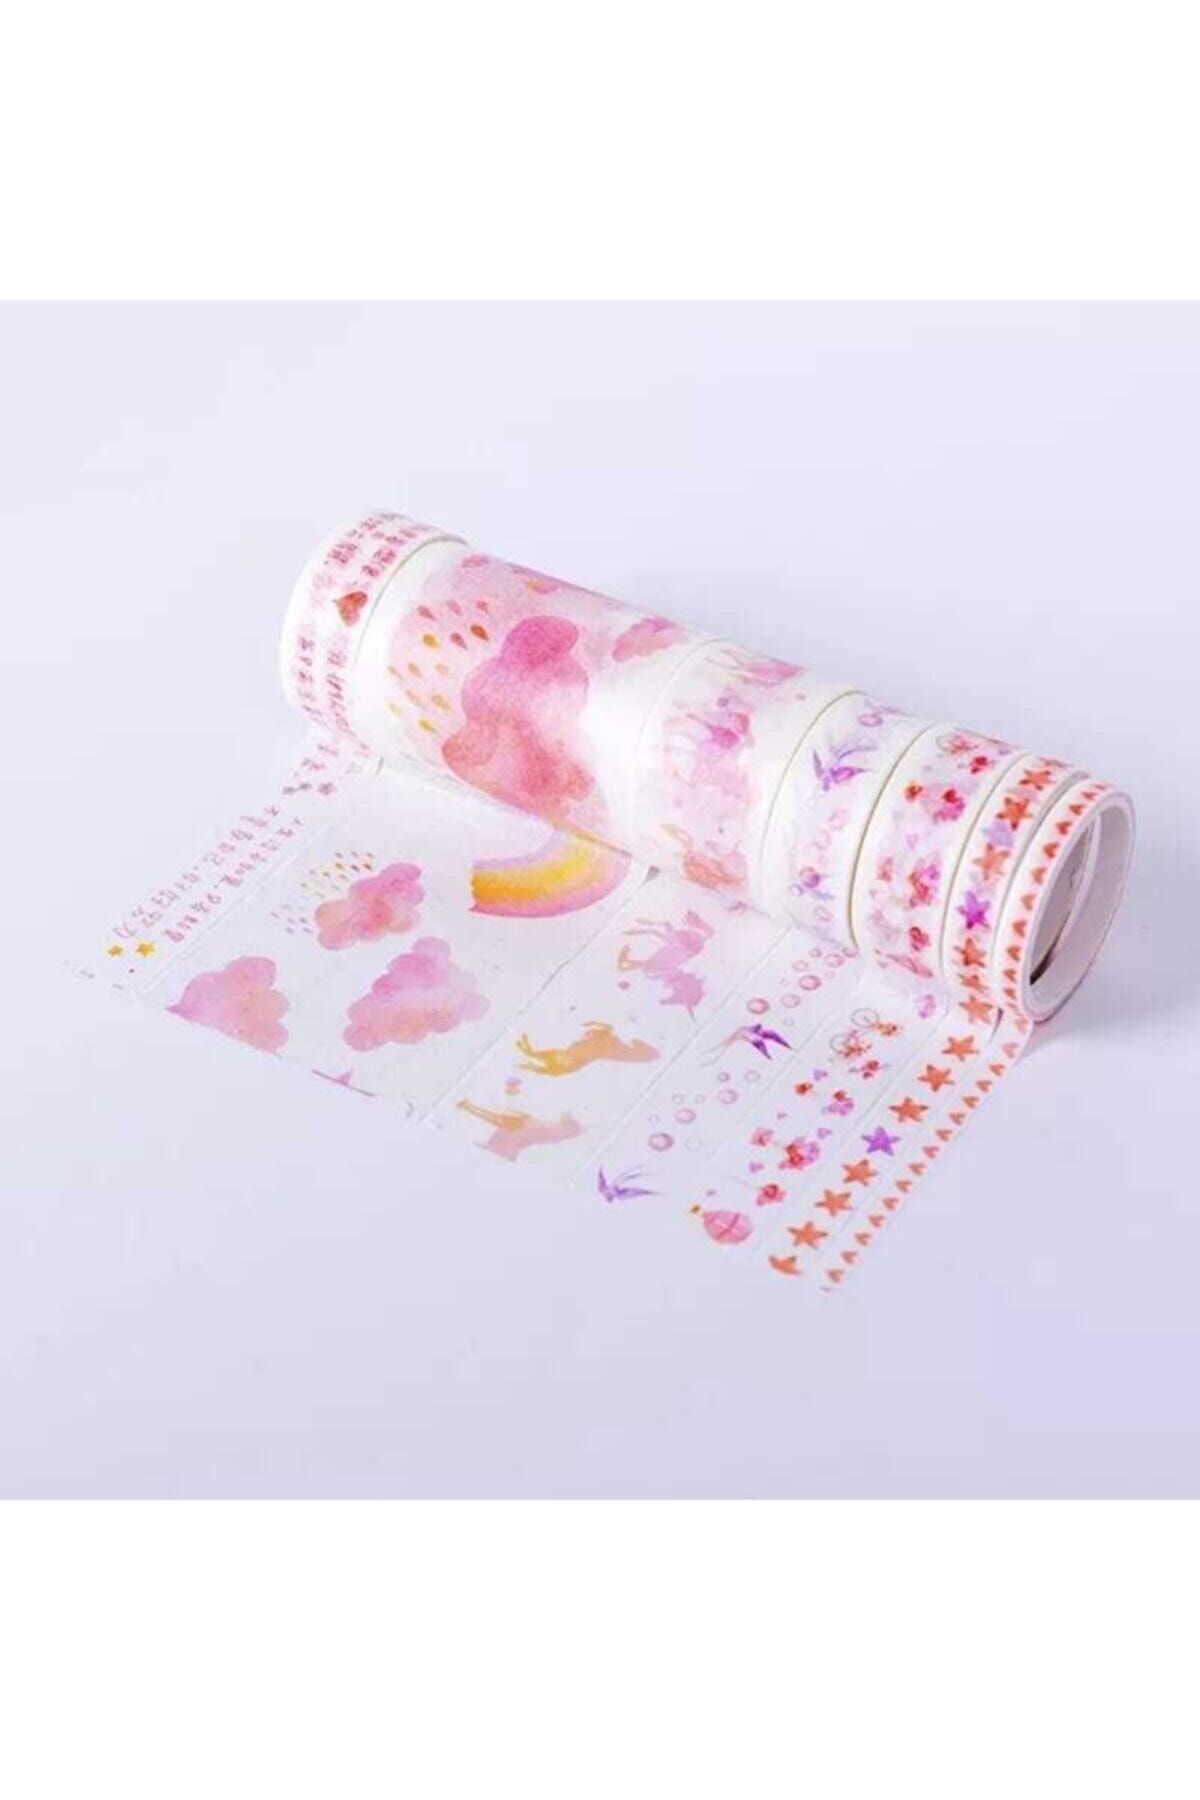 YEŞİL KIRTASİYE Pembe Bulut Tasarımlı Desenli Kağıt Bant Seti Washi Tape